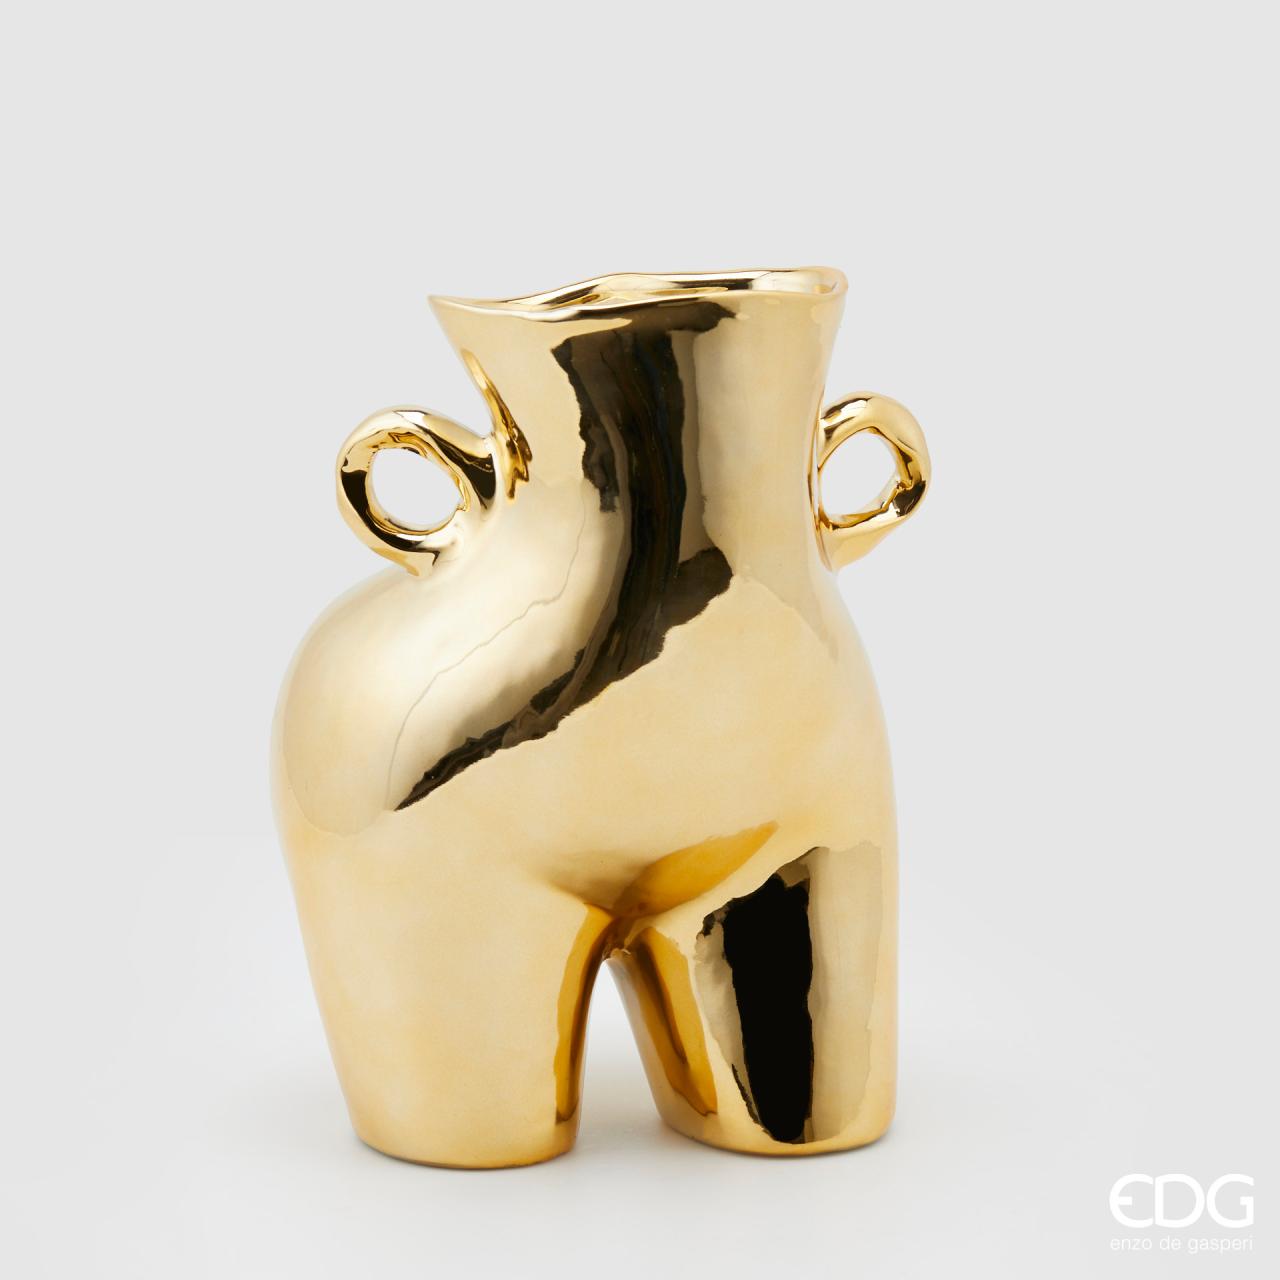 Vaso portafiori in ceramica di colore oro metal dalla forma particolare ed originale. Dimensioni: cm 20 x 16,5 x 27 h. In negozio e online su tuttochic.it